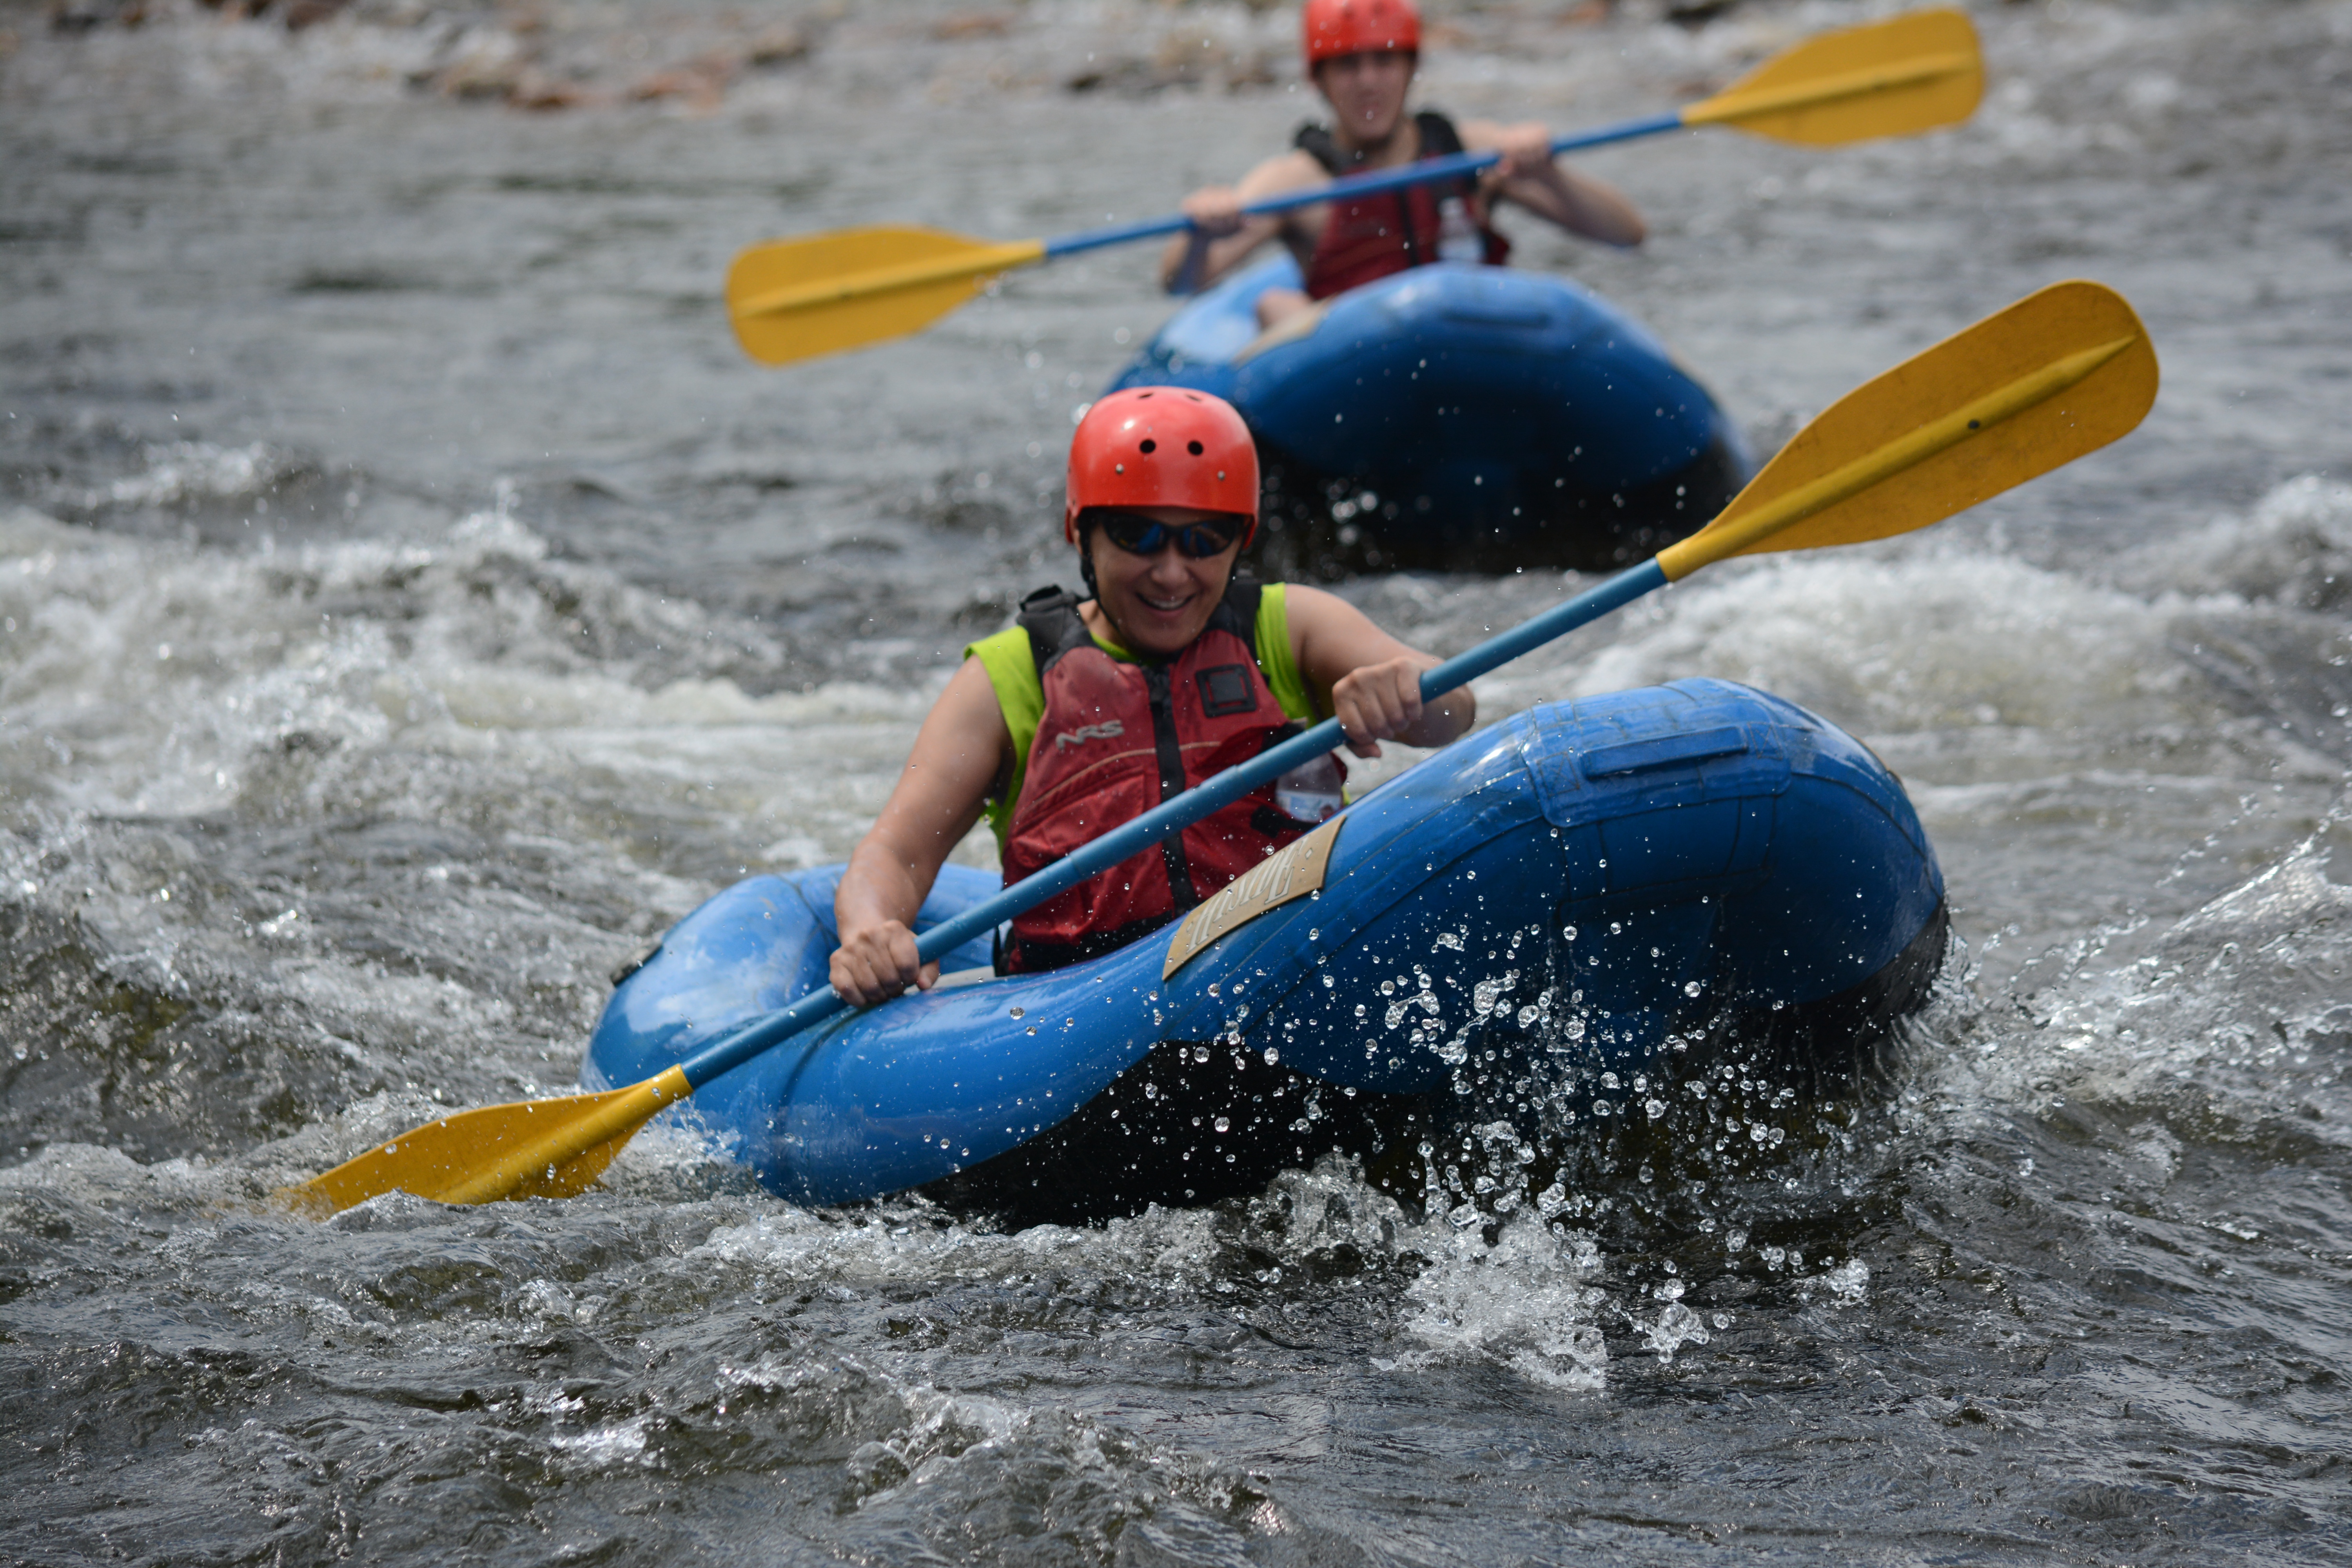 Two rafters enjoying the Deerfield river in inflatable kayaks - "funyaks."